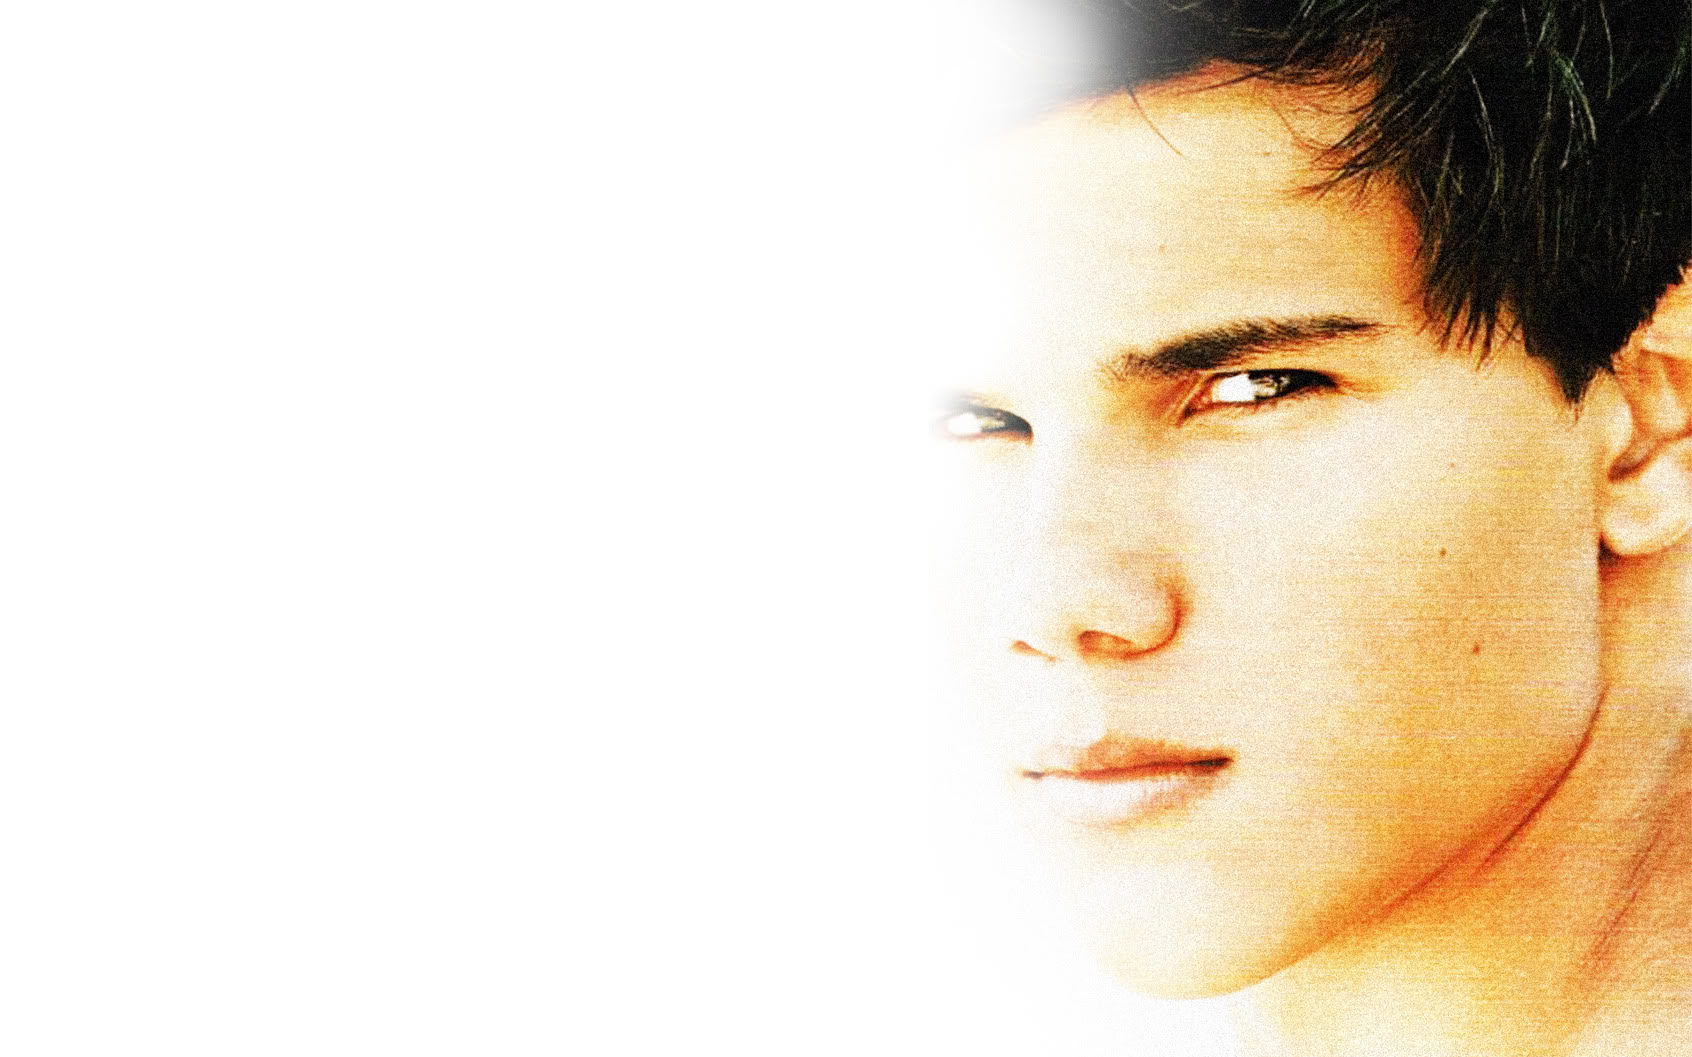  Taylor Lautner Twilight Wallpaper HD is a hi res Wallpaper